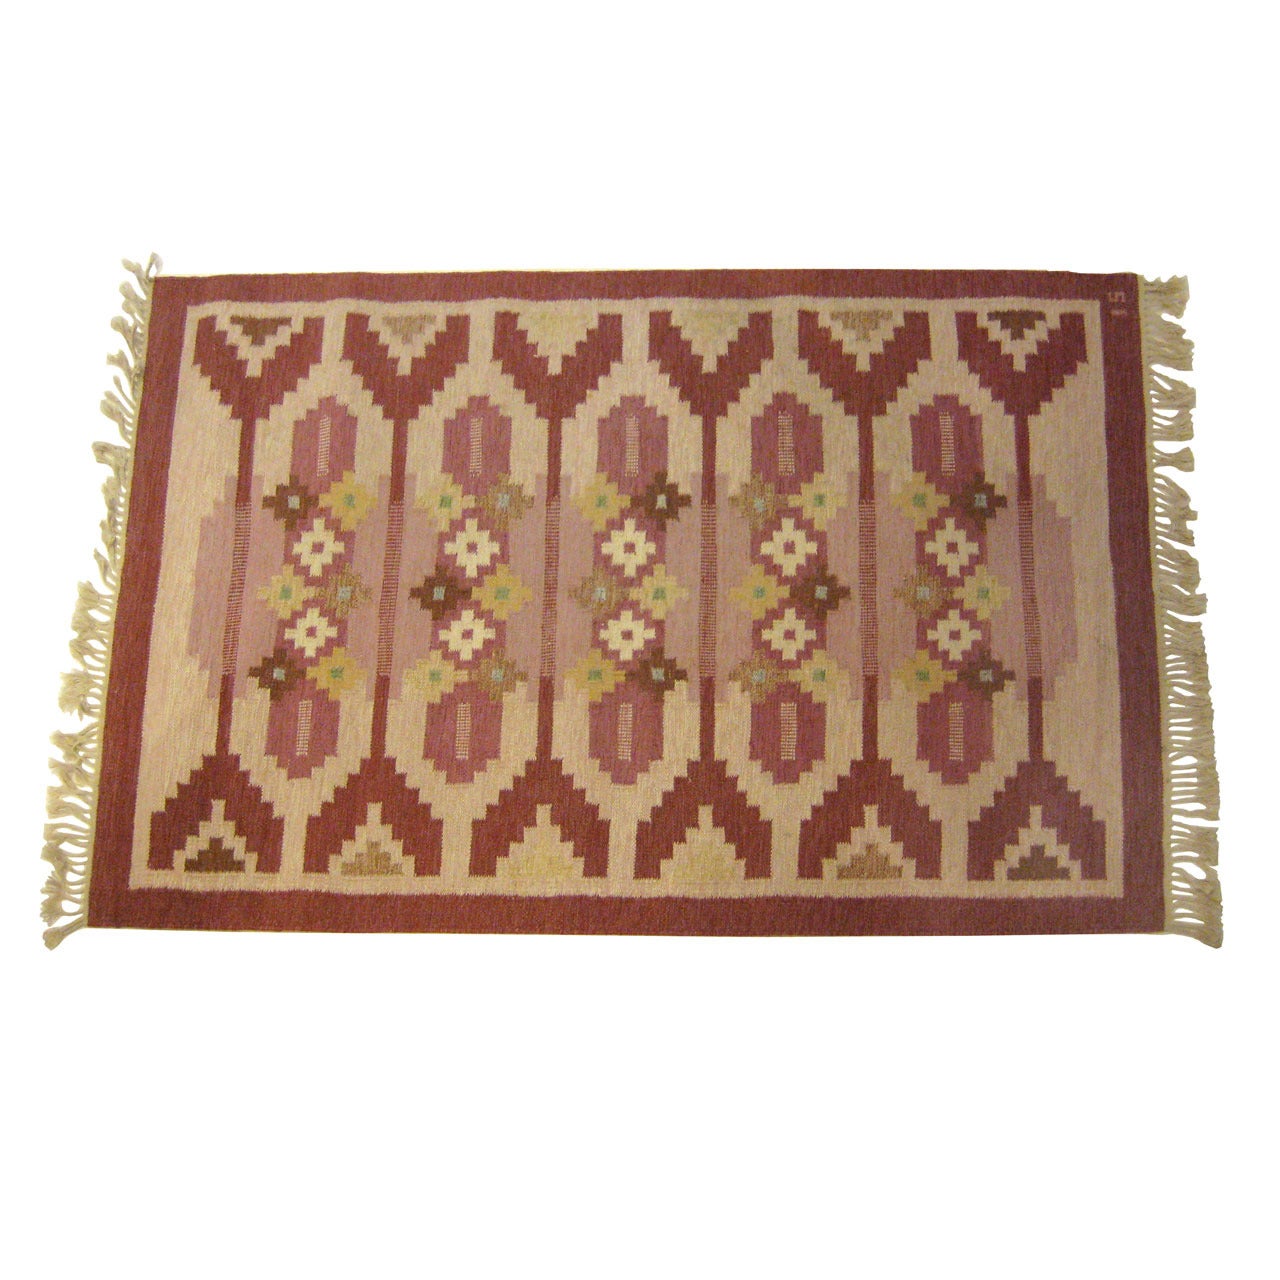 Swedish Flat-Weave Carpet by Ingegerd Silow